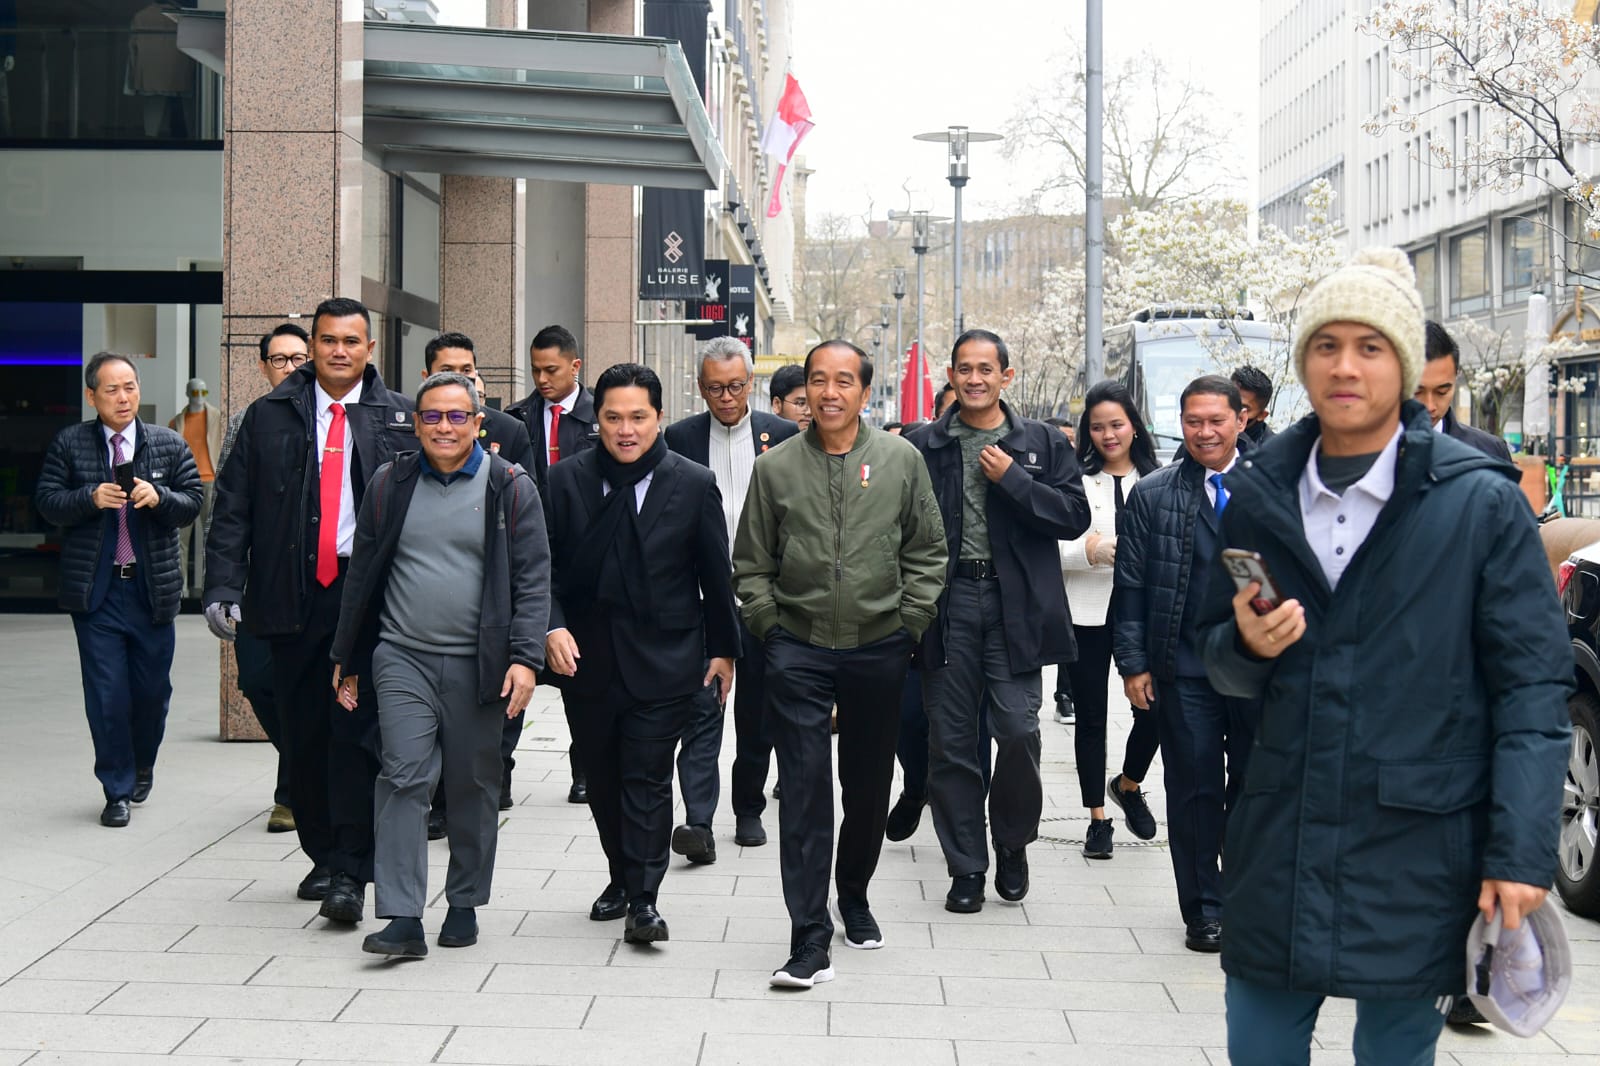 Hari Kedua di Hannover, Presiden Sapa Masyarakat Indonesia hingga Bertemu Kanselir Jerman